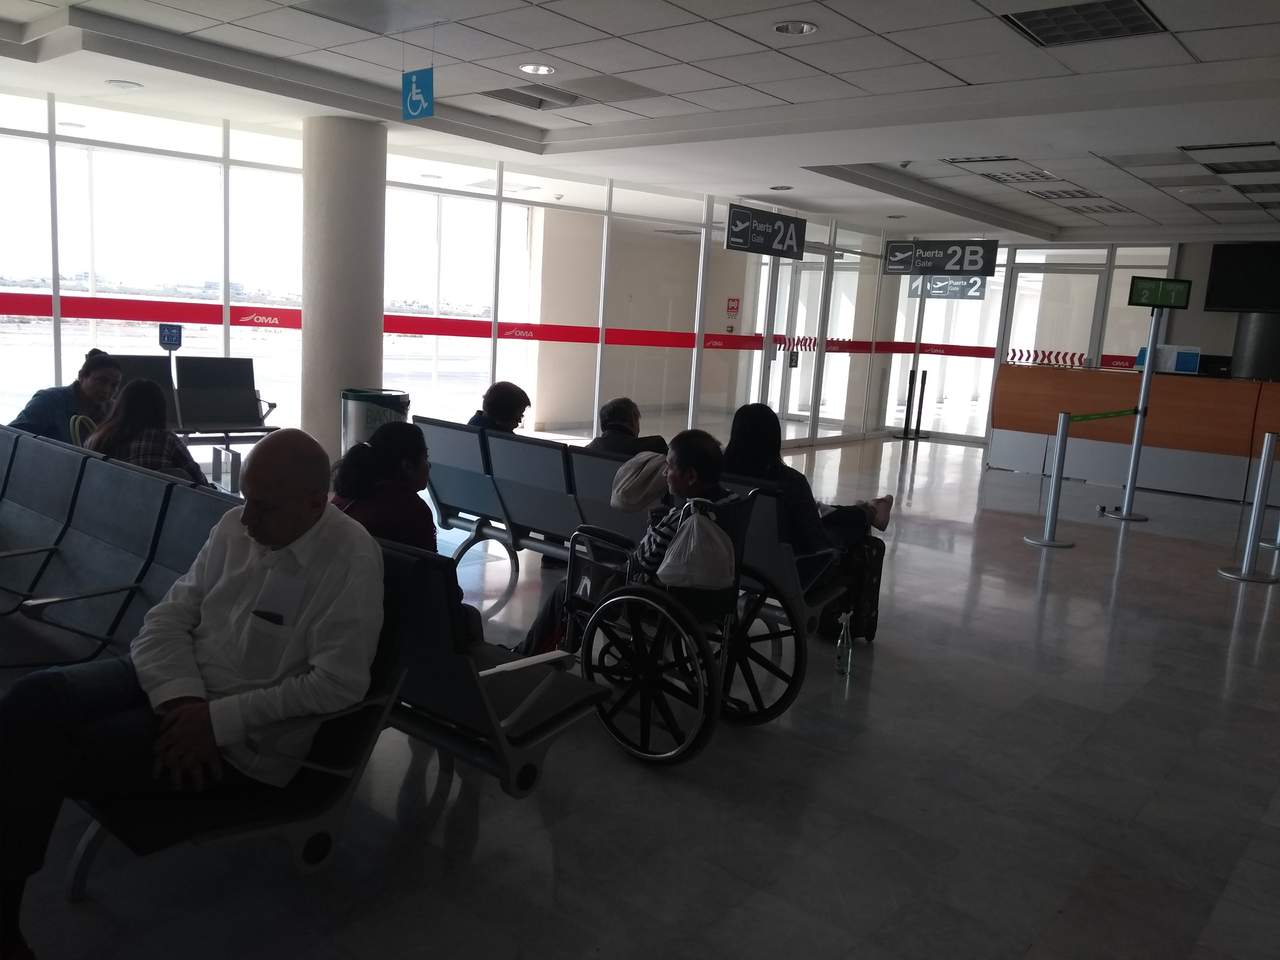 Llevan 7 horas esperando un vuelo en aeropuerto de Torreón